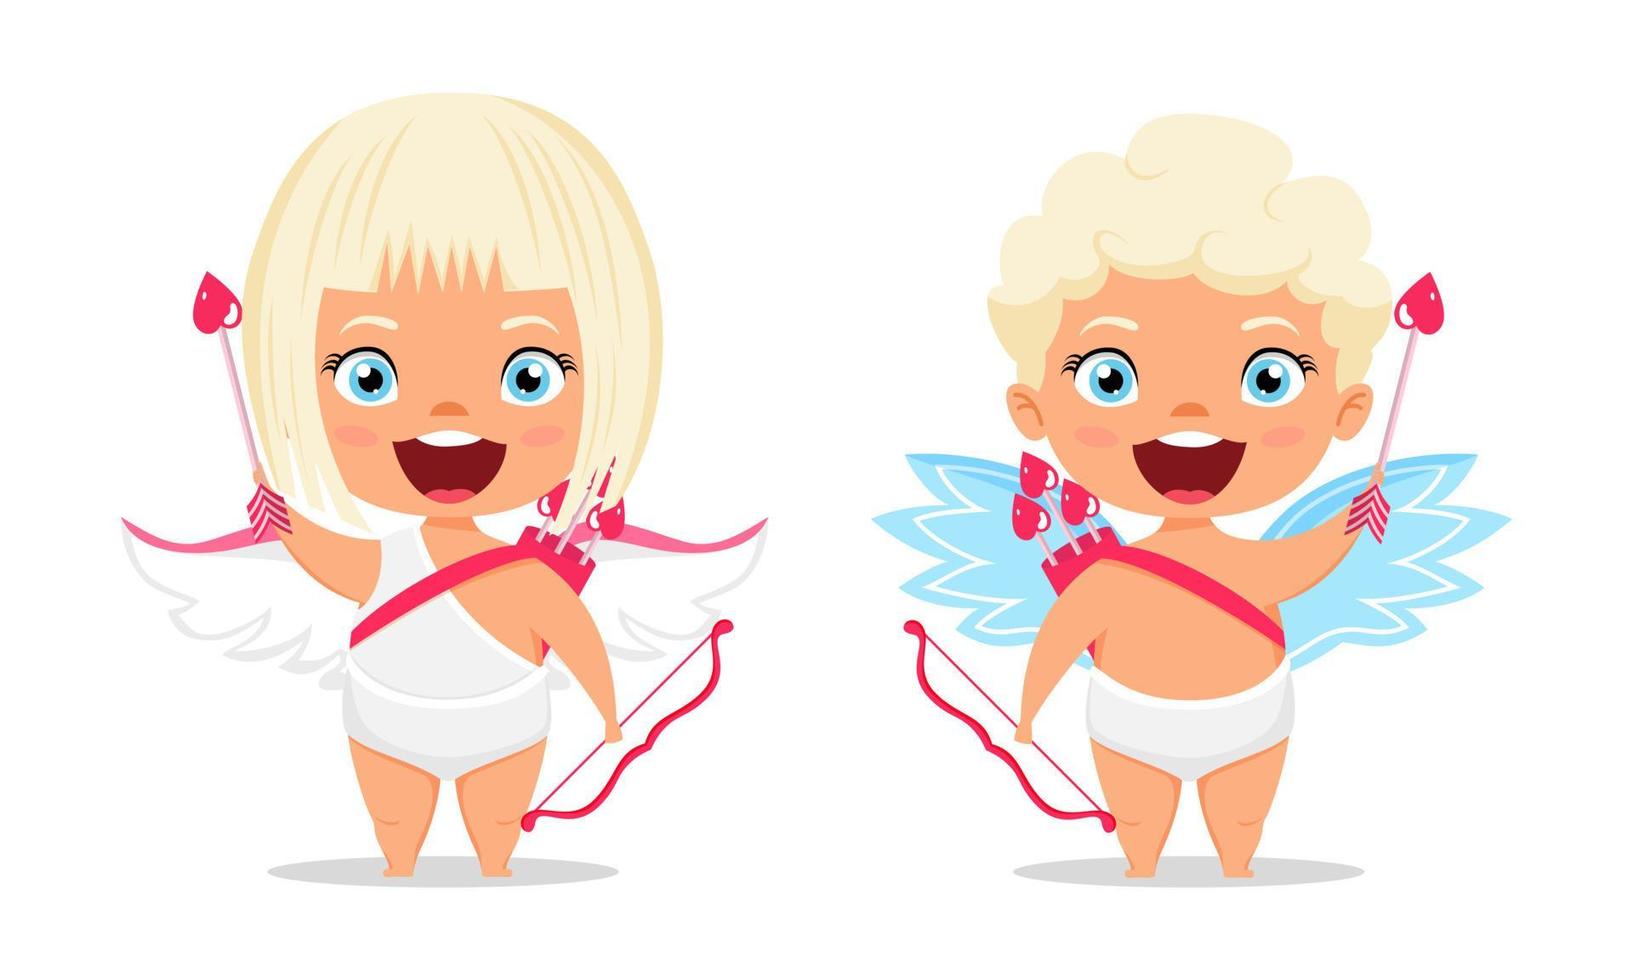 gelukkige schattige cupido-personages met vleugels en staande poseren met pijl met vrolijke uitdrukking vector